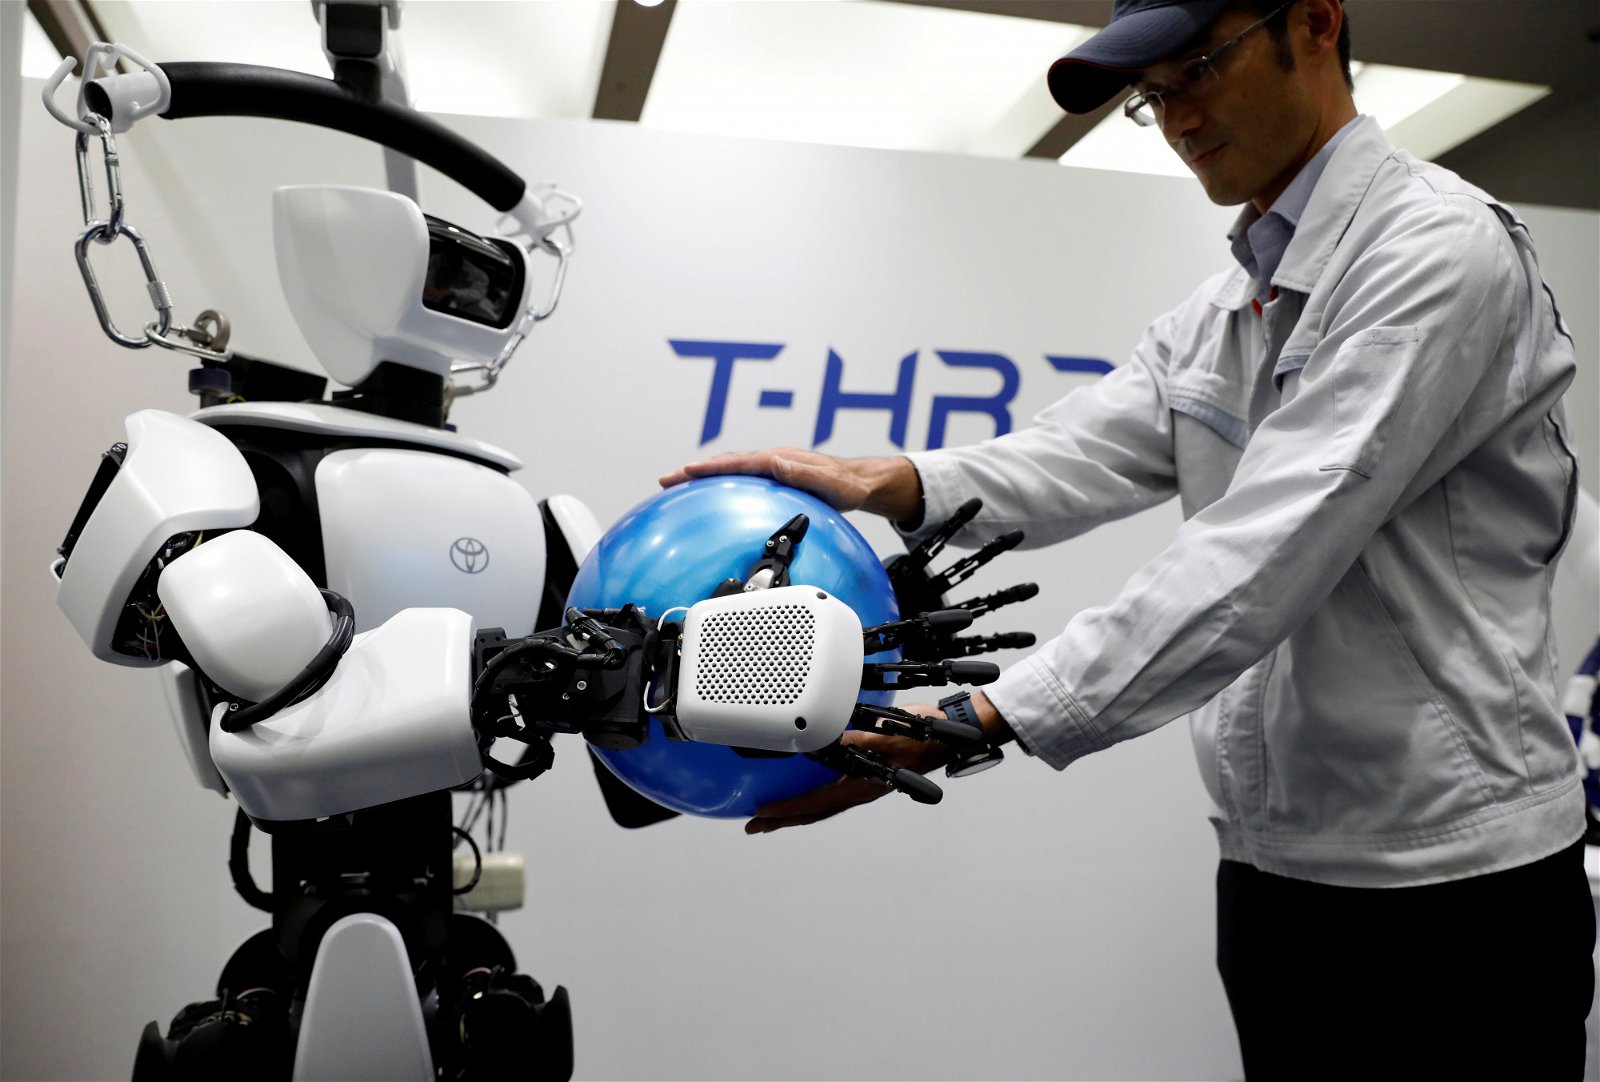 丰田汽车公司旗下的“T-HR3”仿人机器人正示范将手中的球，交给丰田汽车工作人员。